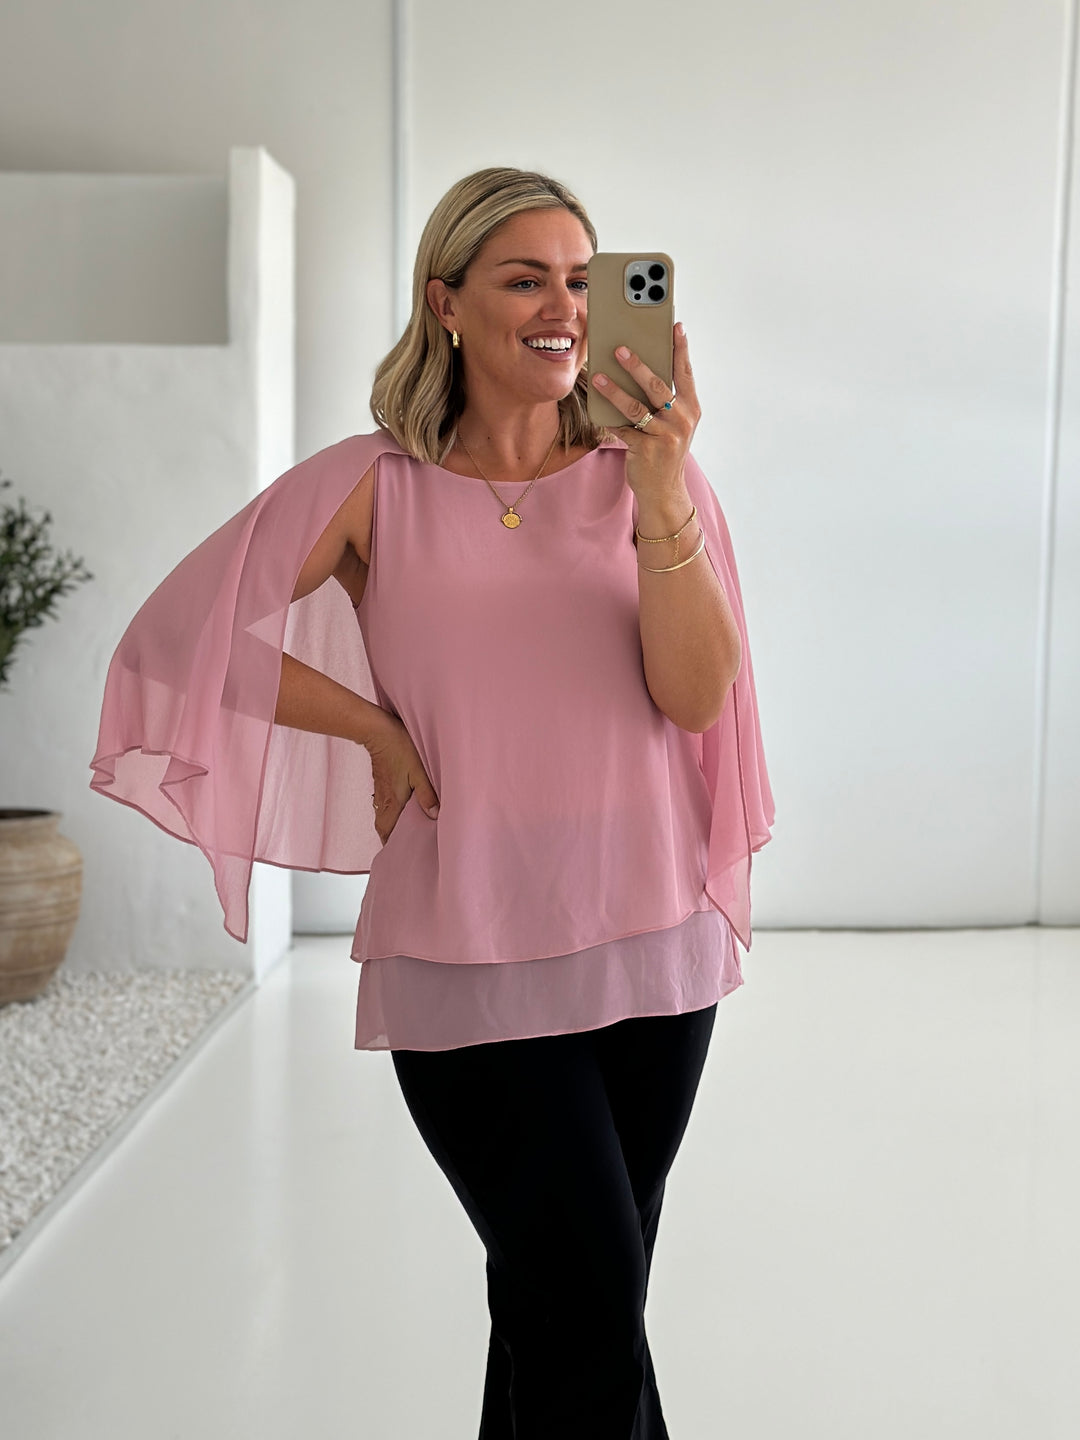 Cape multi wear chiffon blouse in Dusty Pink